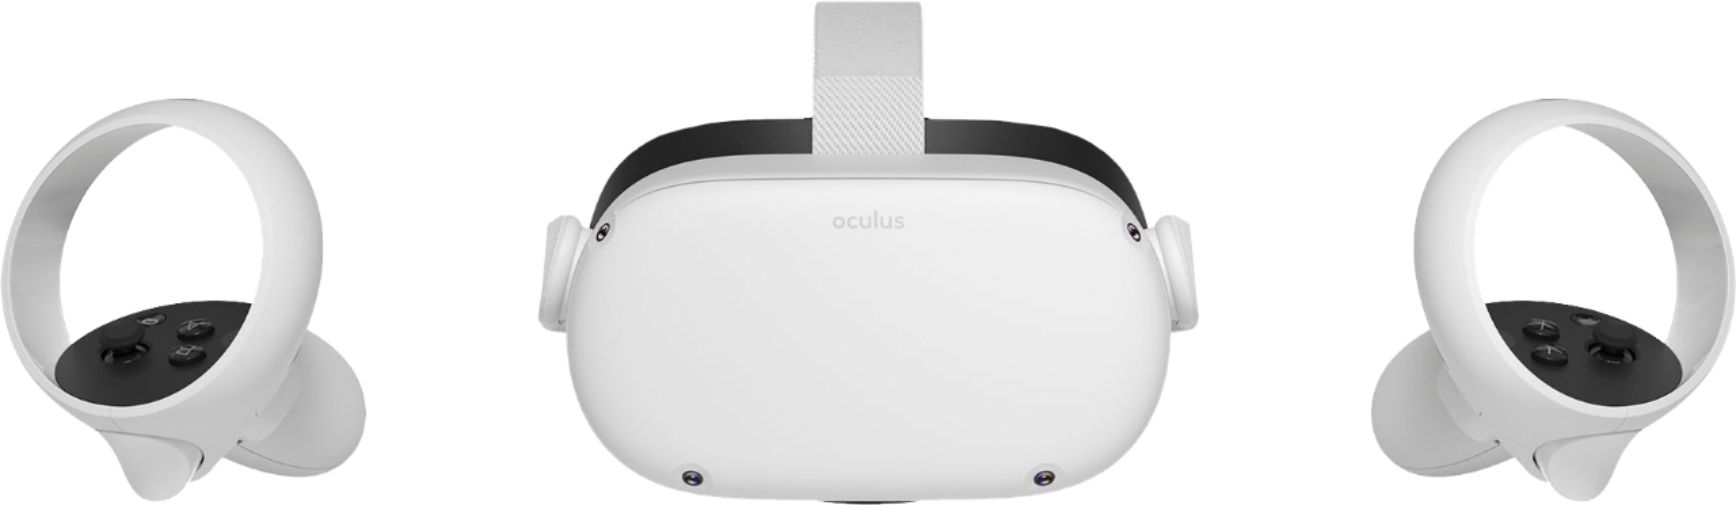 oculus quest price best buy